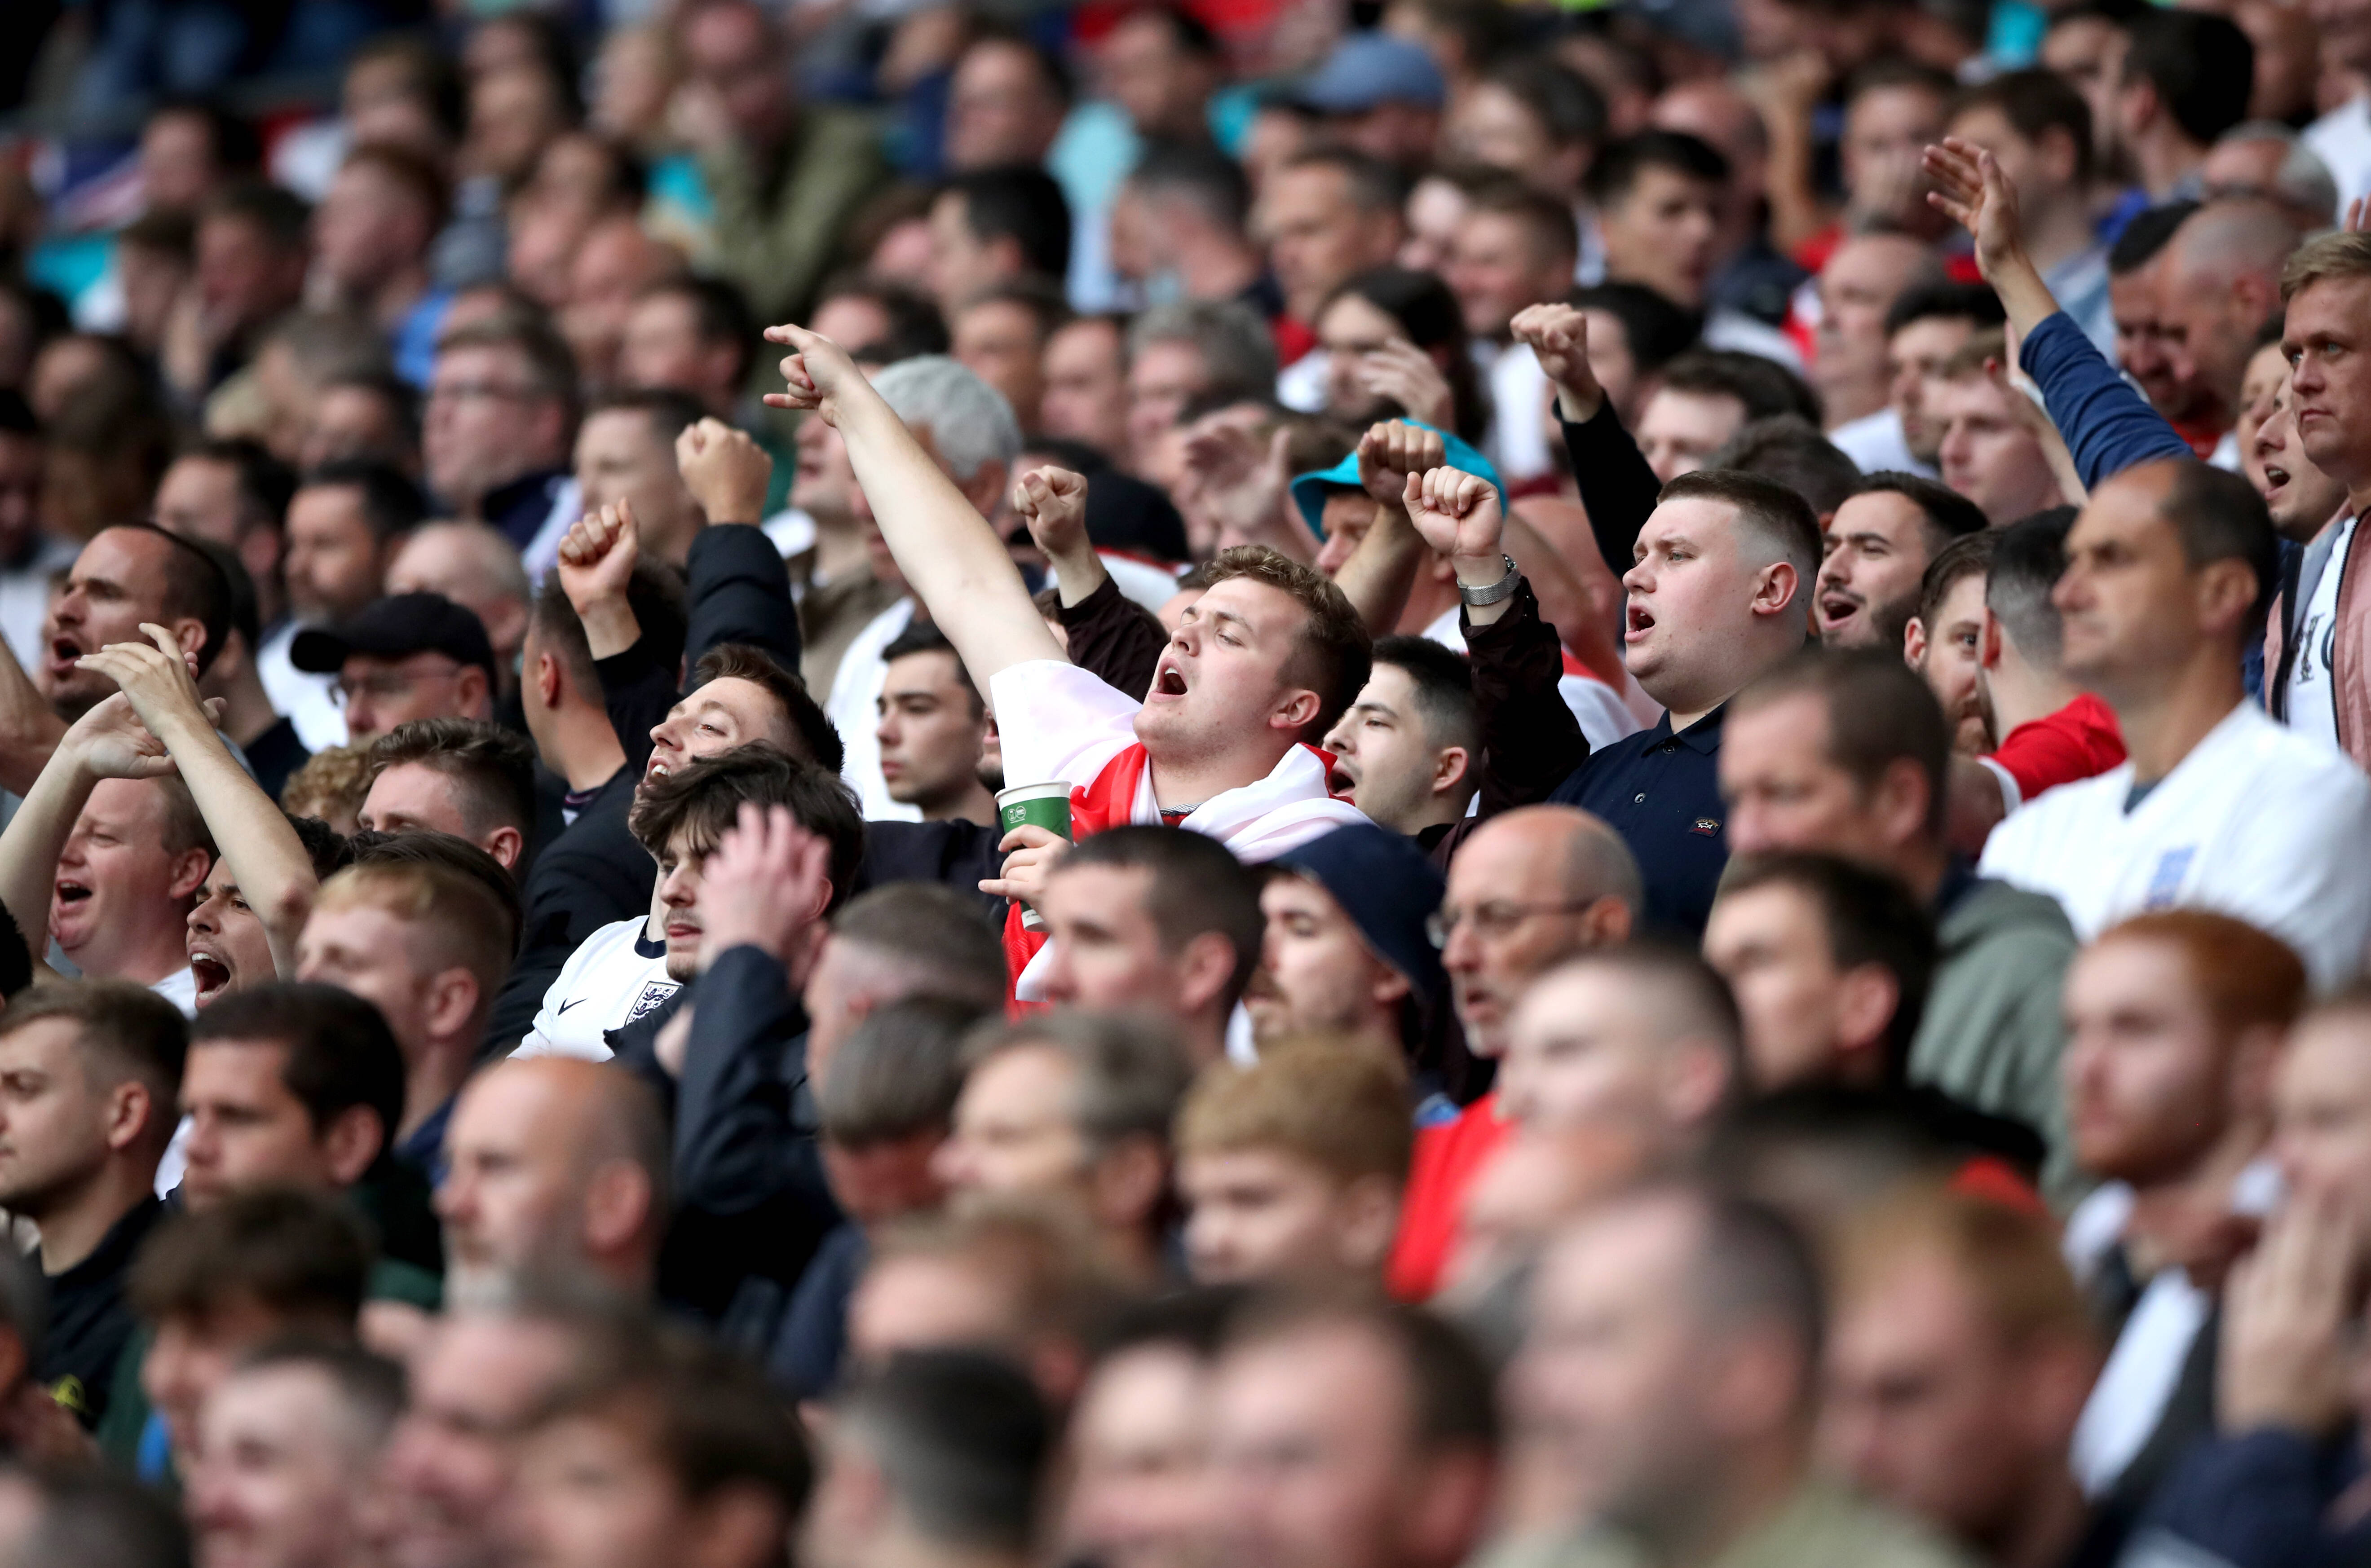 Fans in Wembley: Die Inzidenz steigt, die Zahl der Fans im Stadion auch.